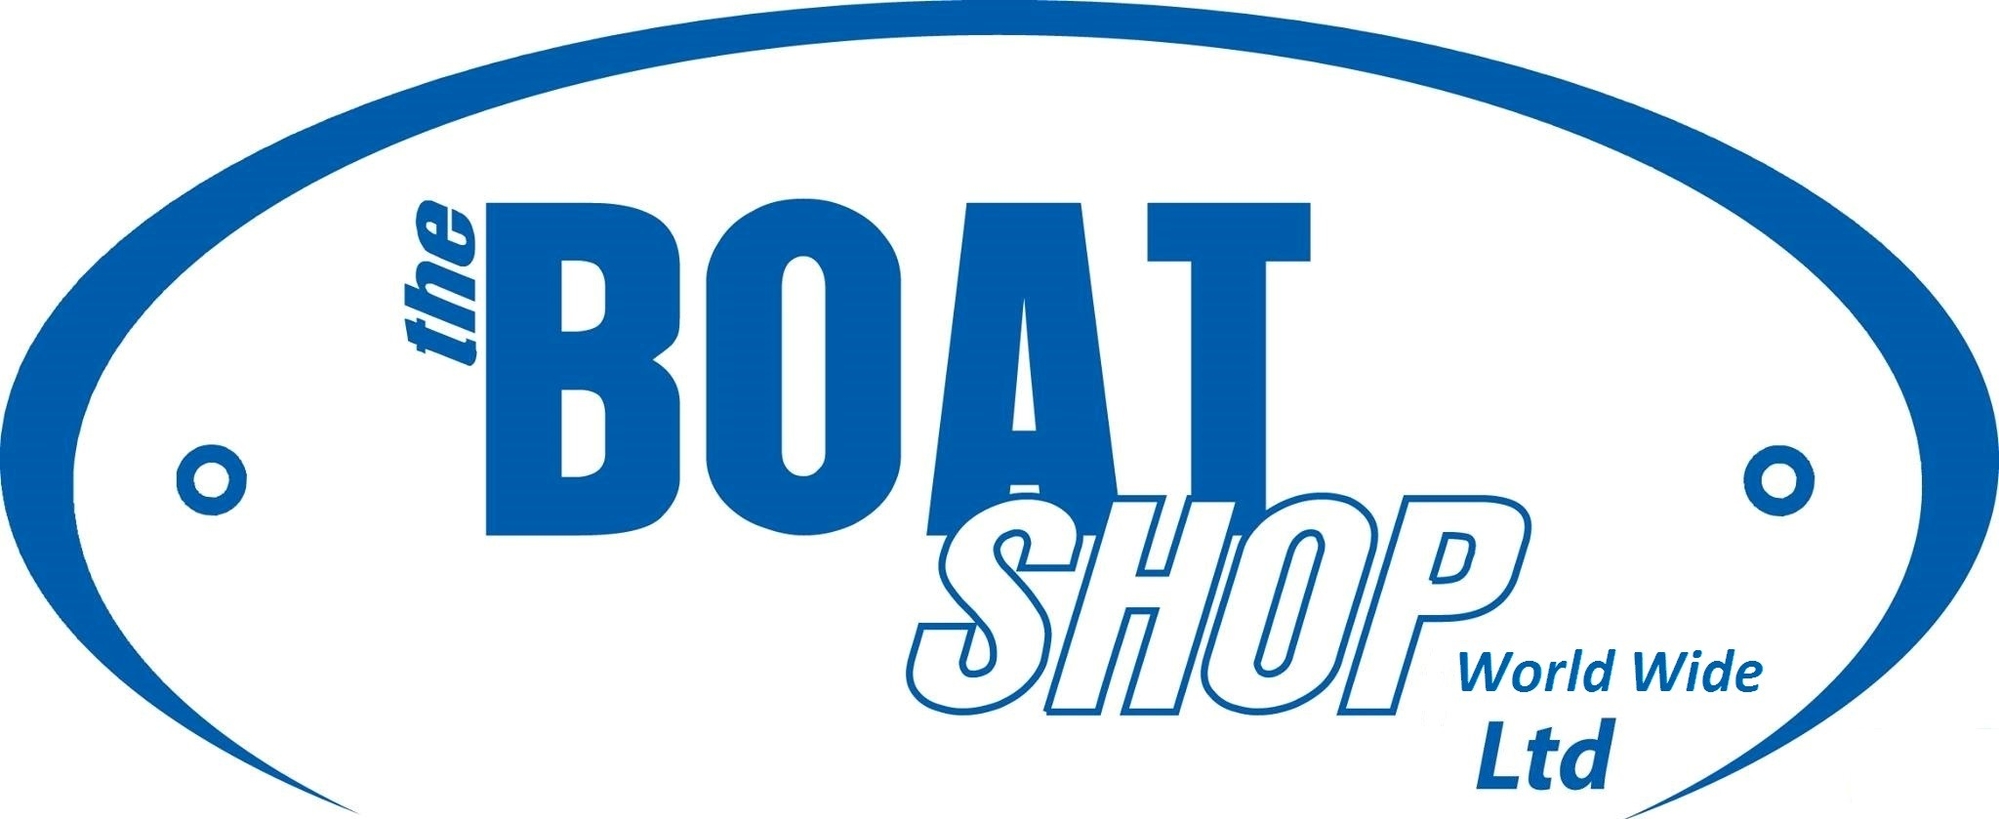 The Boat Shop (WW) Ltd